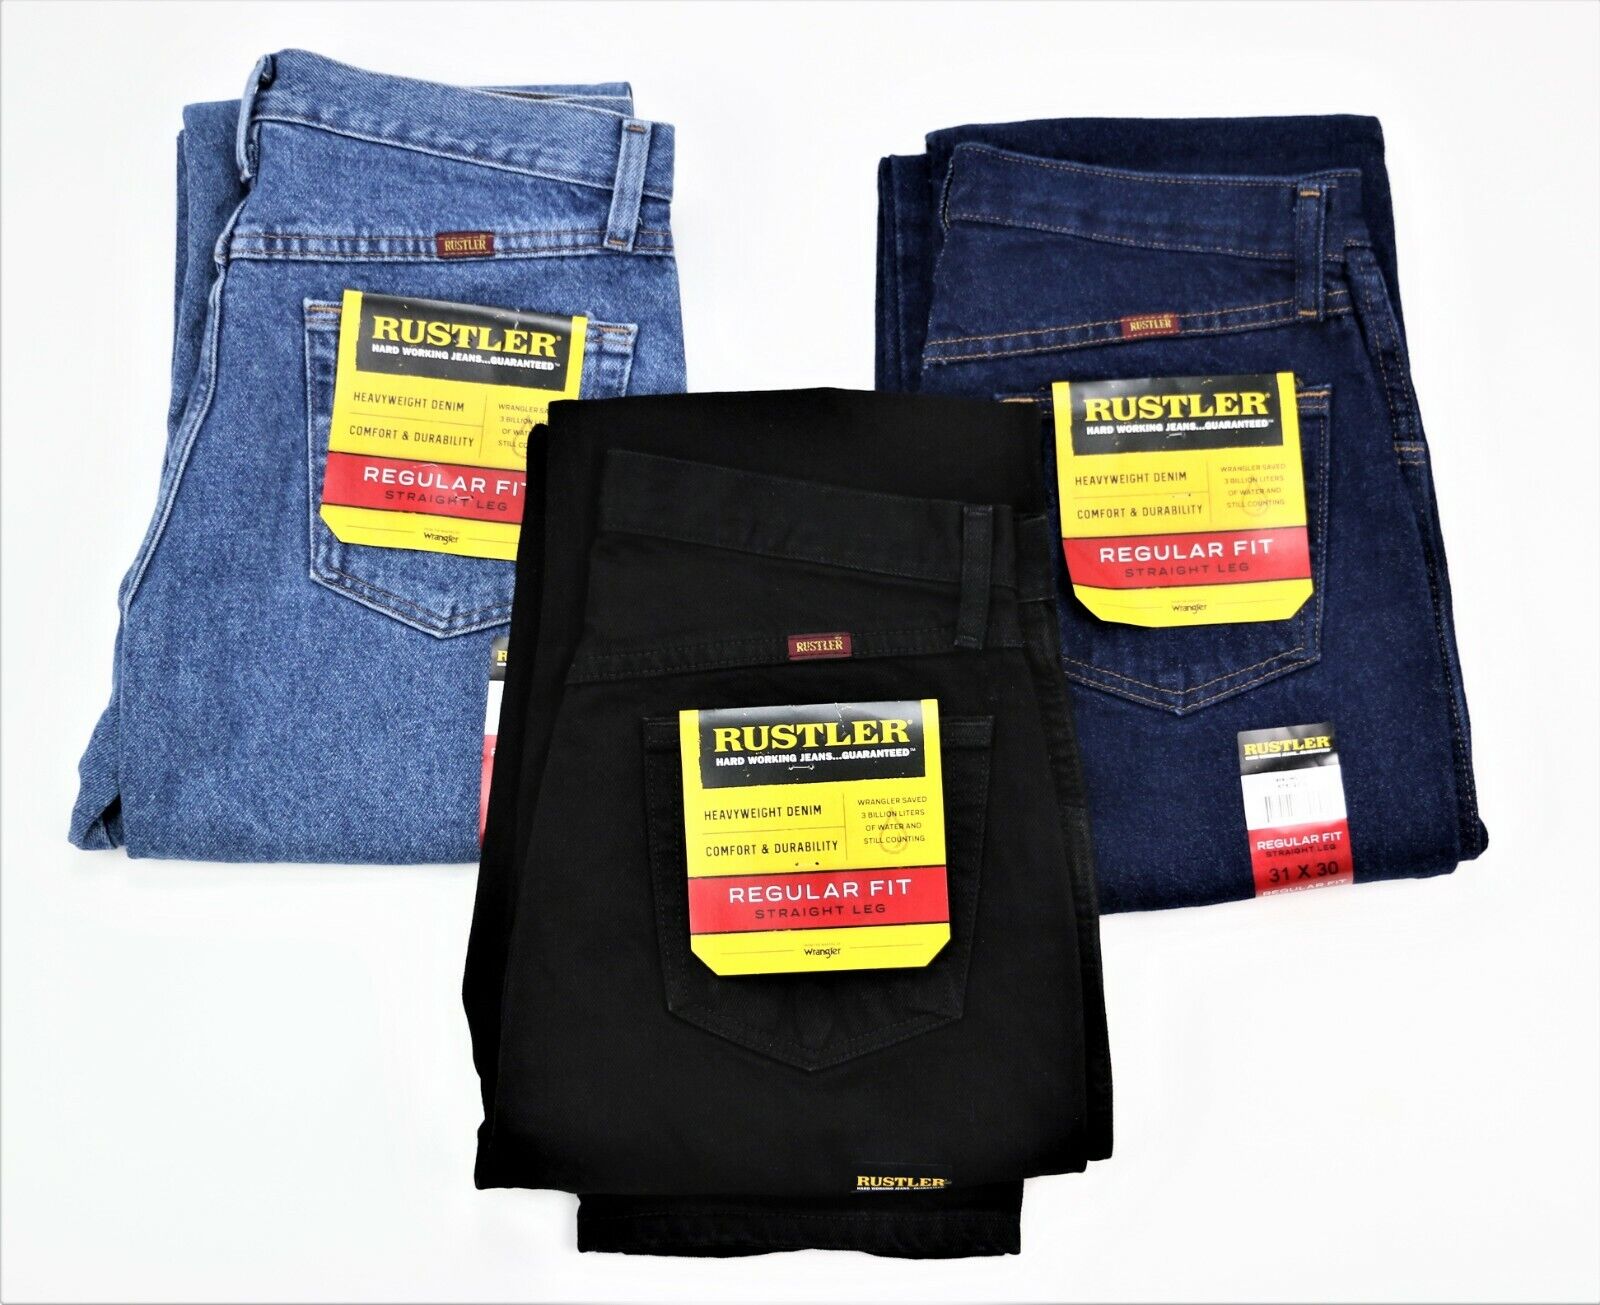 New Rustler by Wrangler Men's Regular Fit Straight-Leg Jeans All Sizes